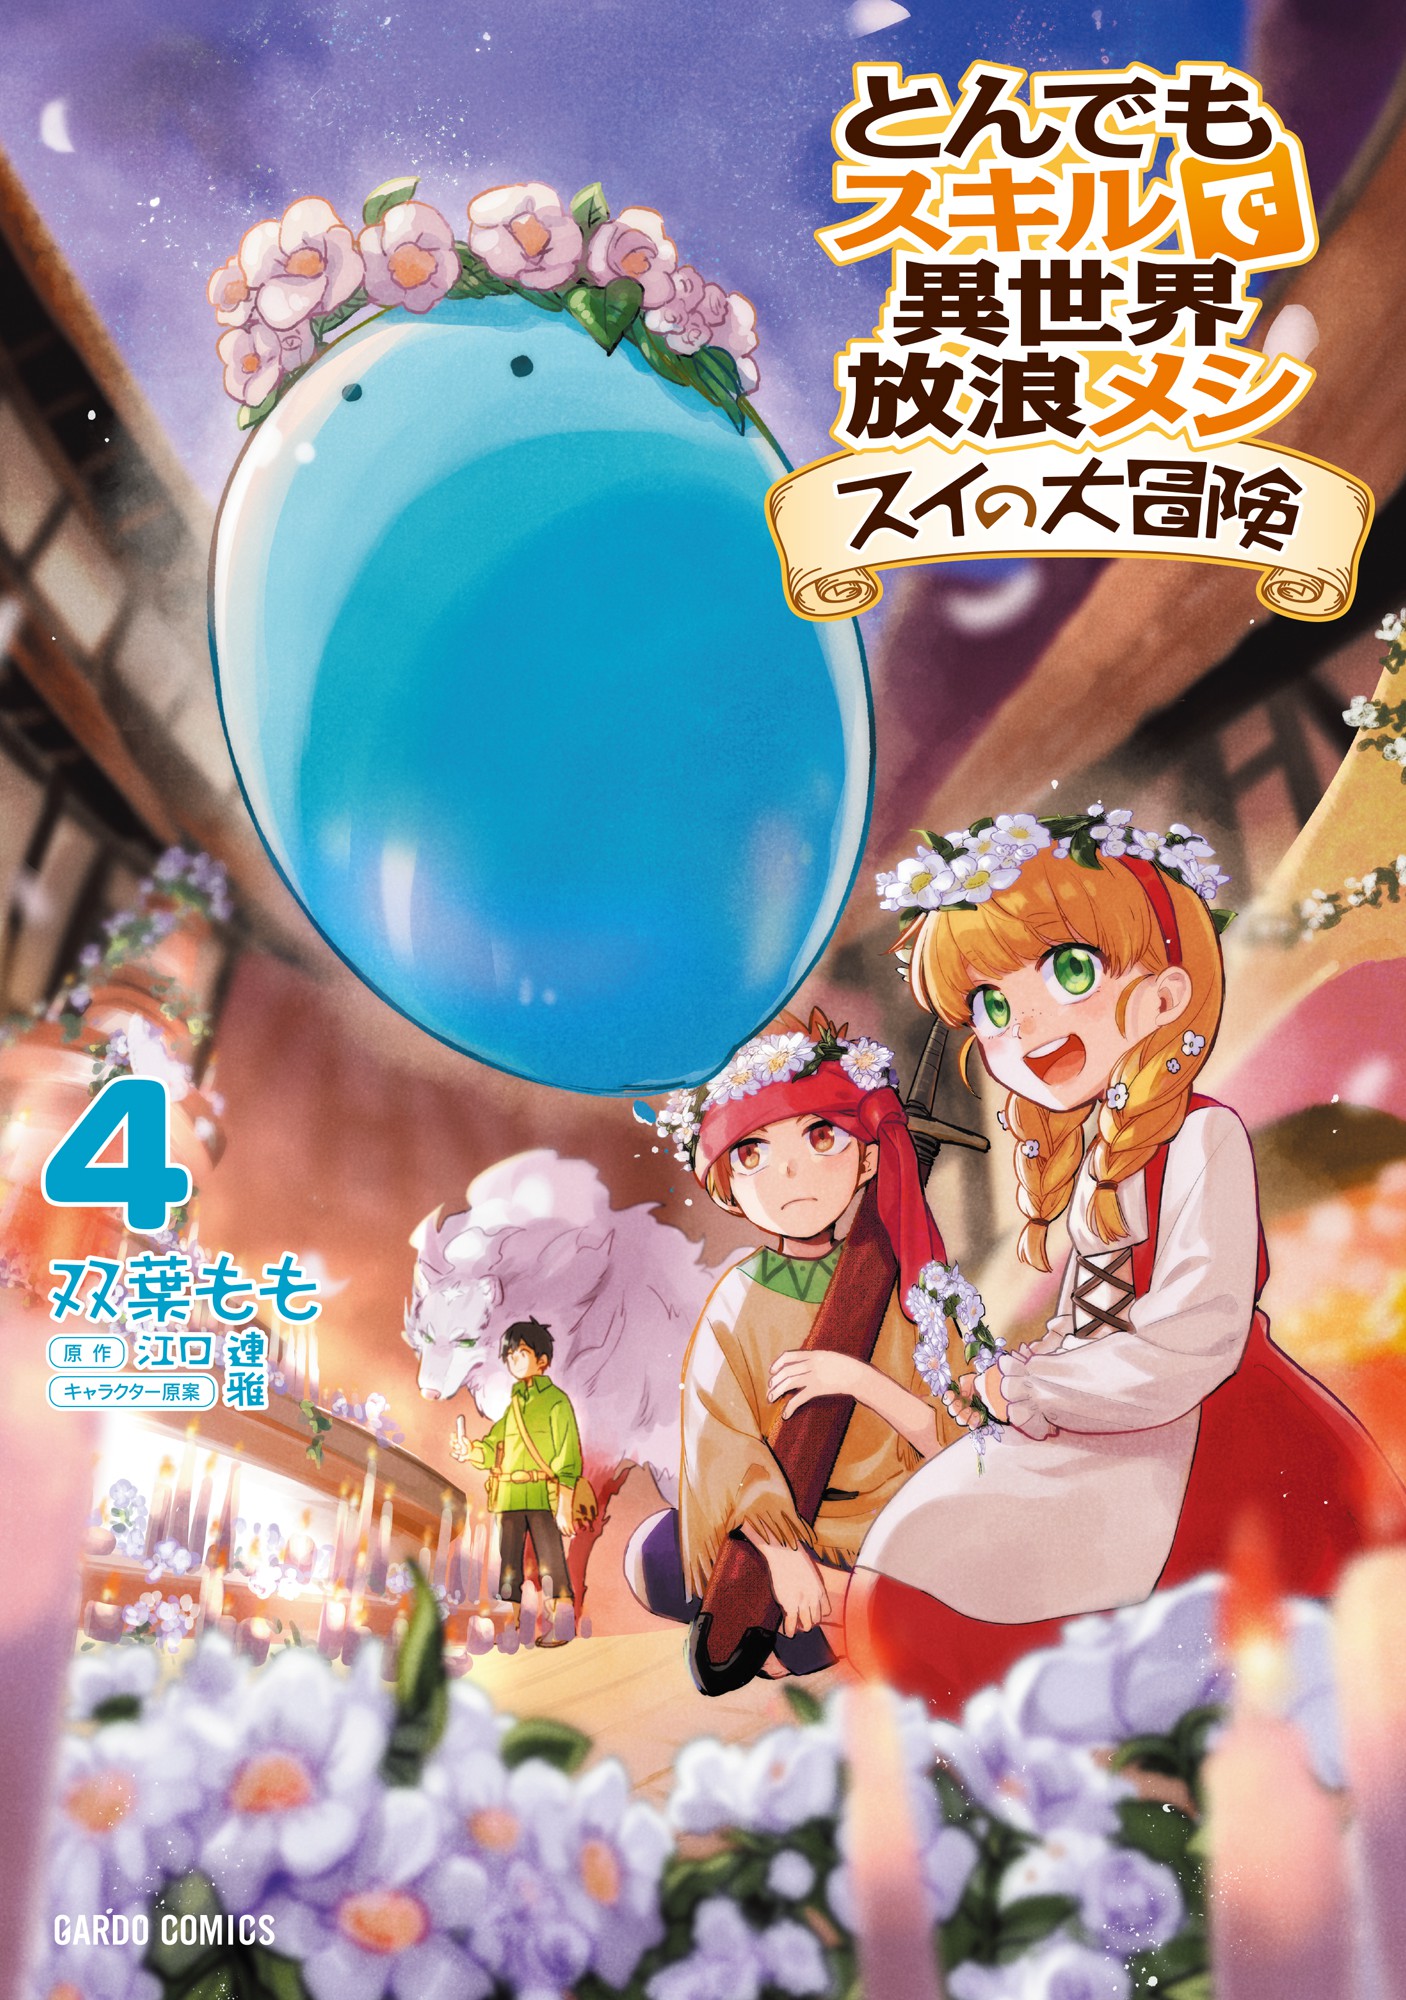 Art] Tondemo Skill de Isekai Hourou Meshi - Volume 4 Cover : r/manga